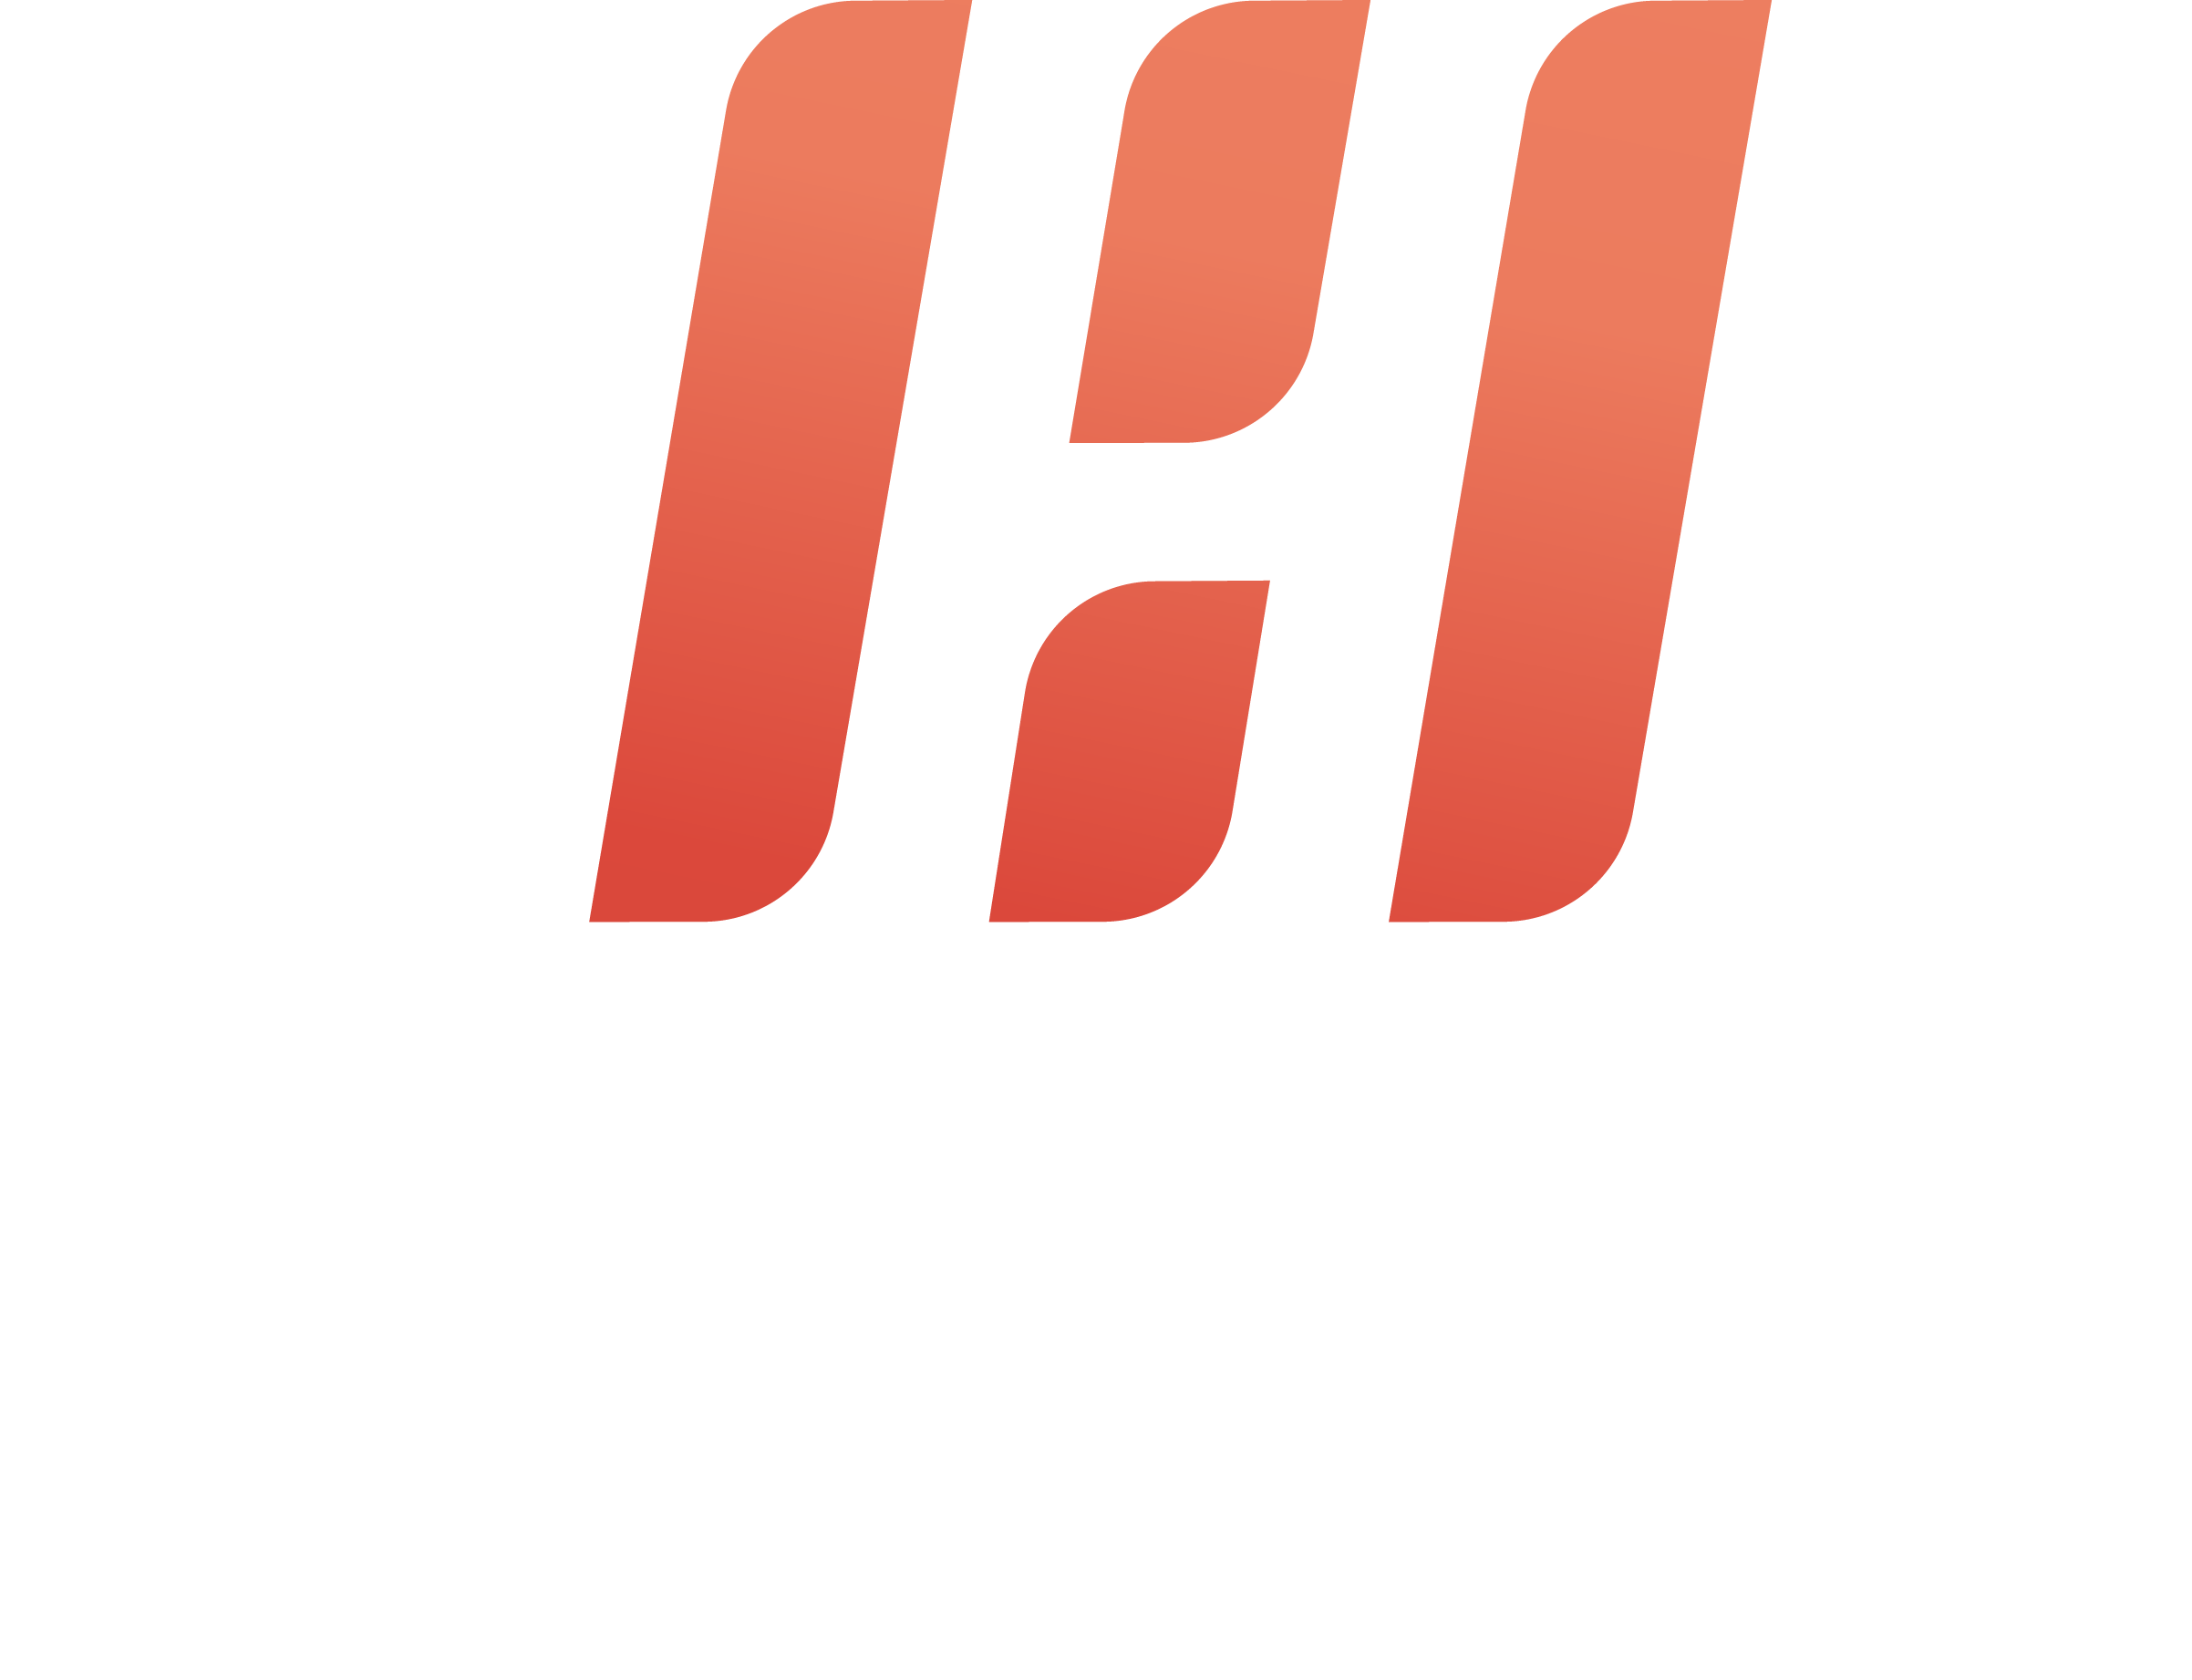 HLM Logo